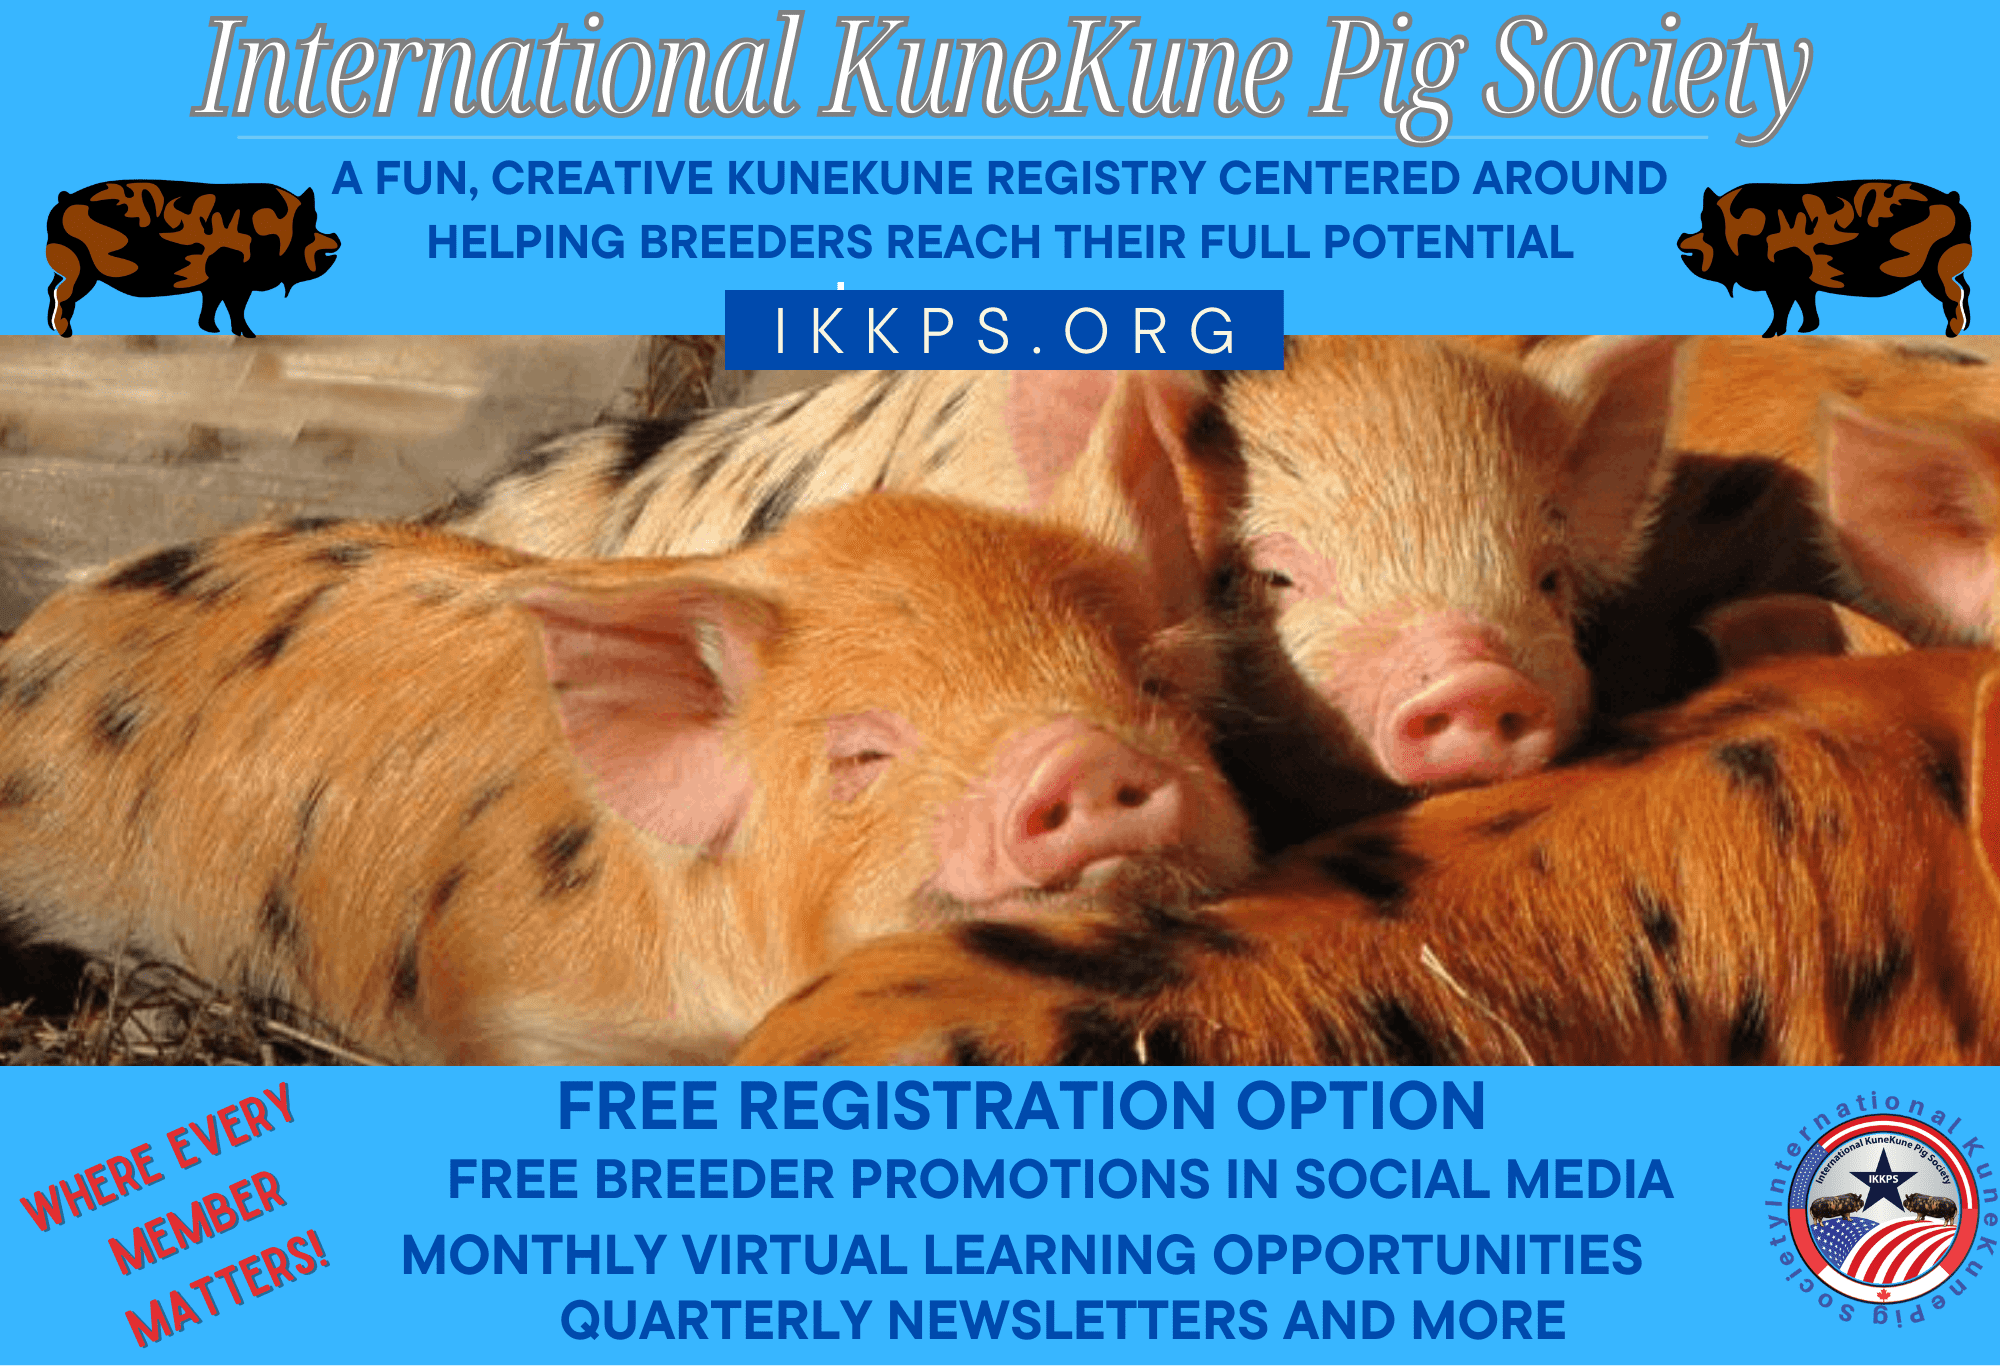 The International KuneKune Pig Society is an official KuneKune Registry